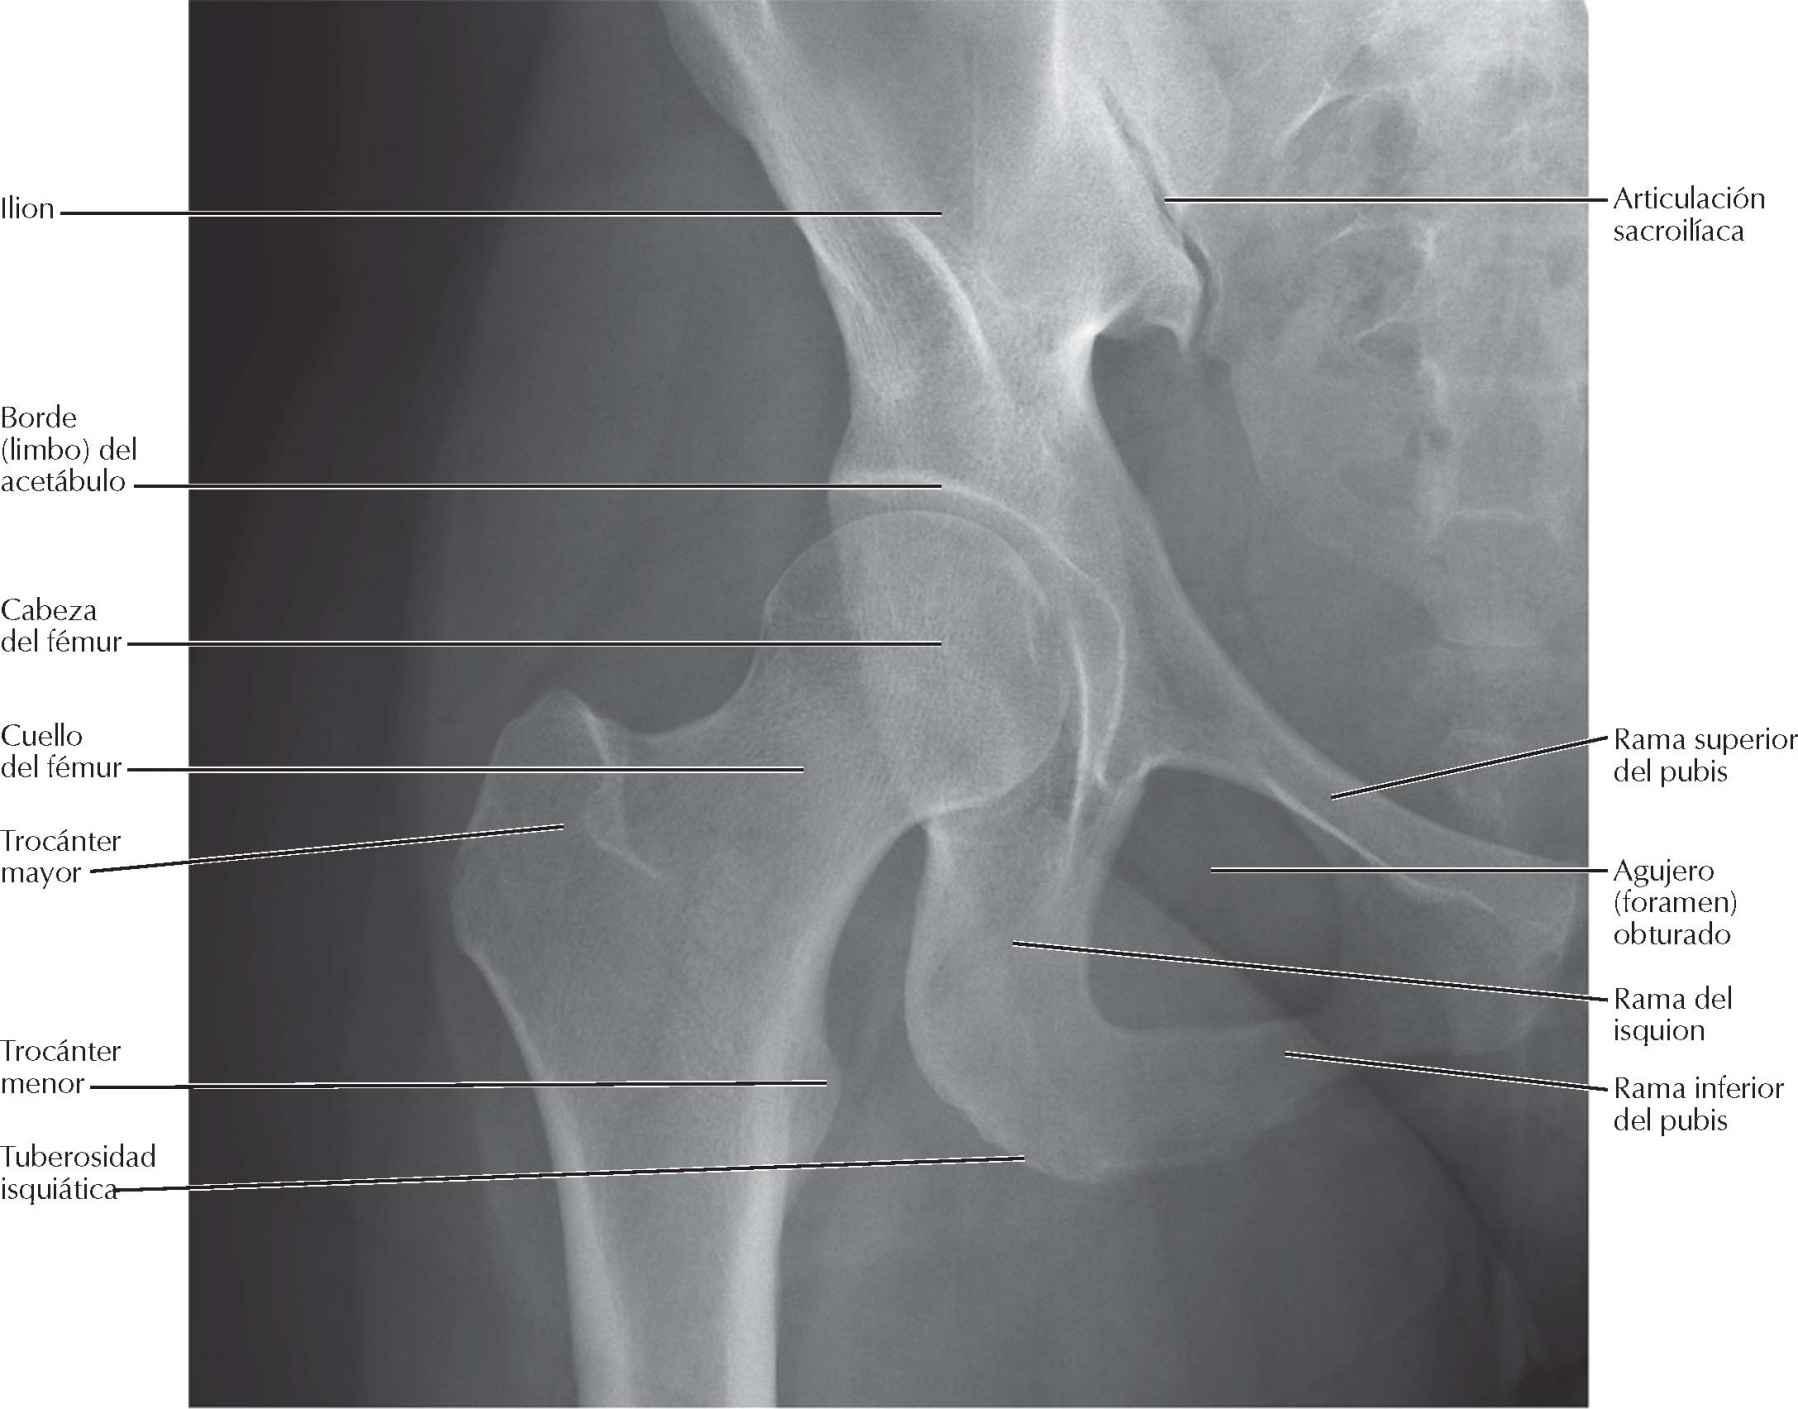 Articulación de la cadera: radiografía anteroposterior